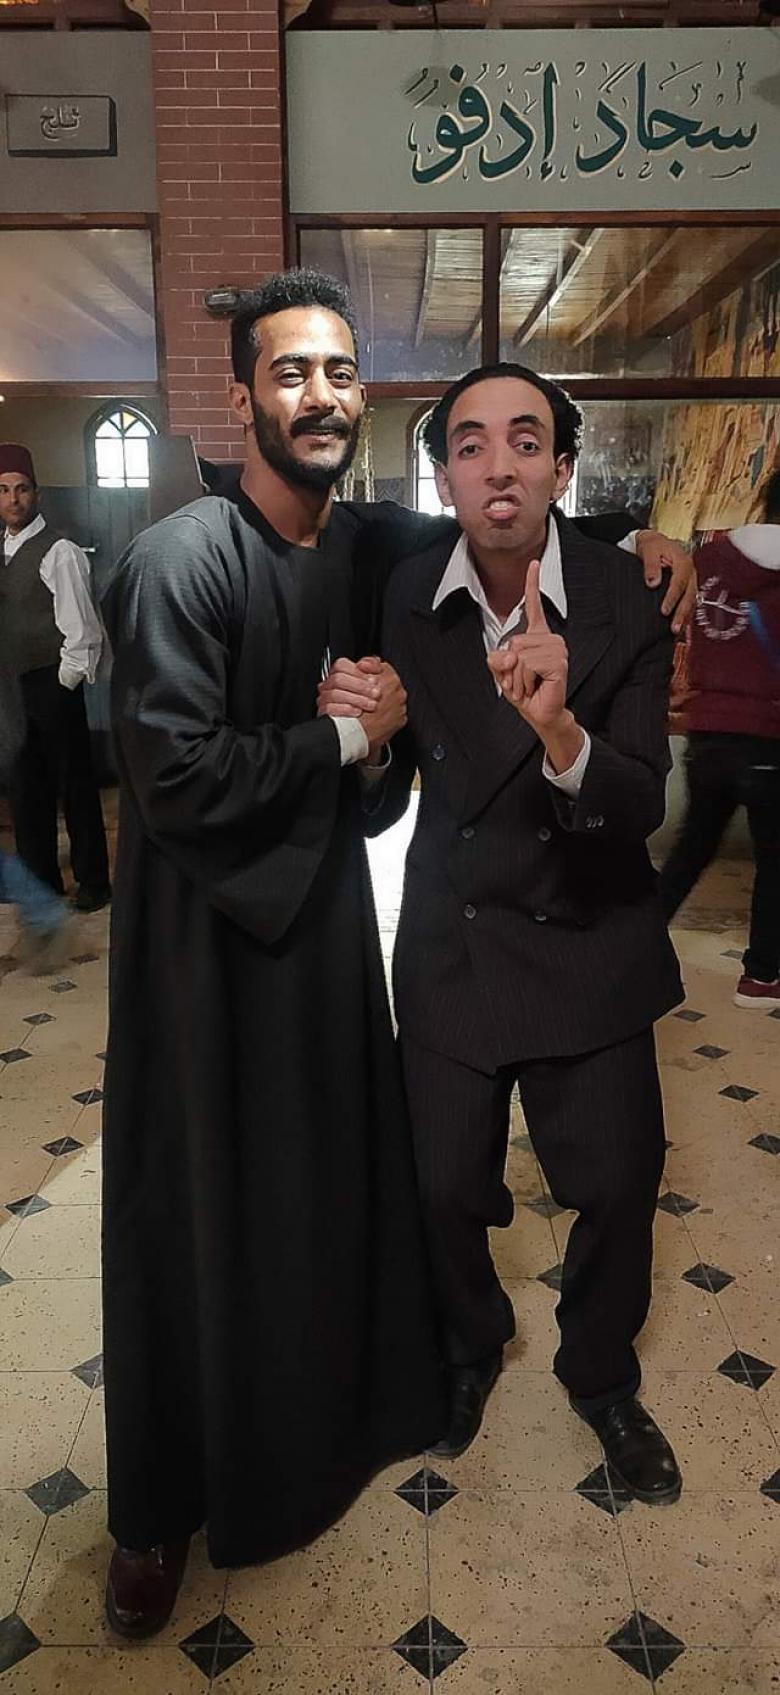  الفنان عبد الرحمن أبوليلة ومحمد رمضان واتهامات بالإساءة للراحل اسماعيل ياسين